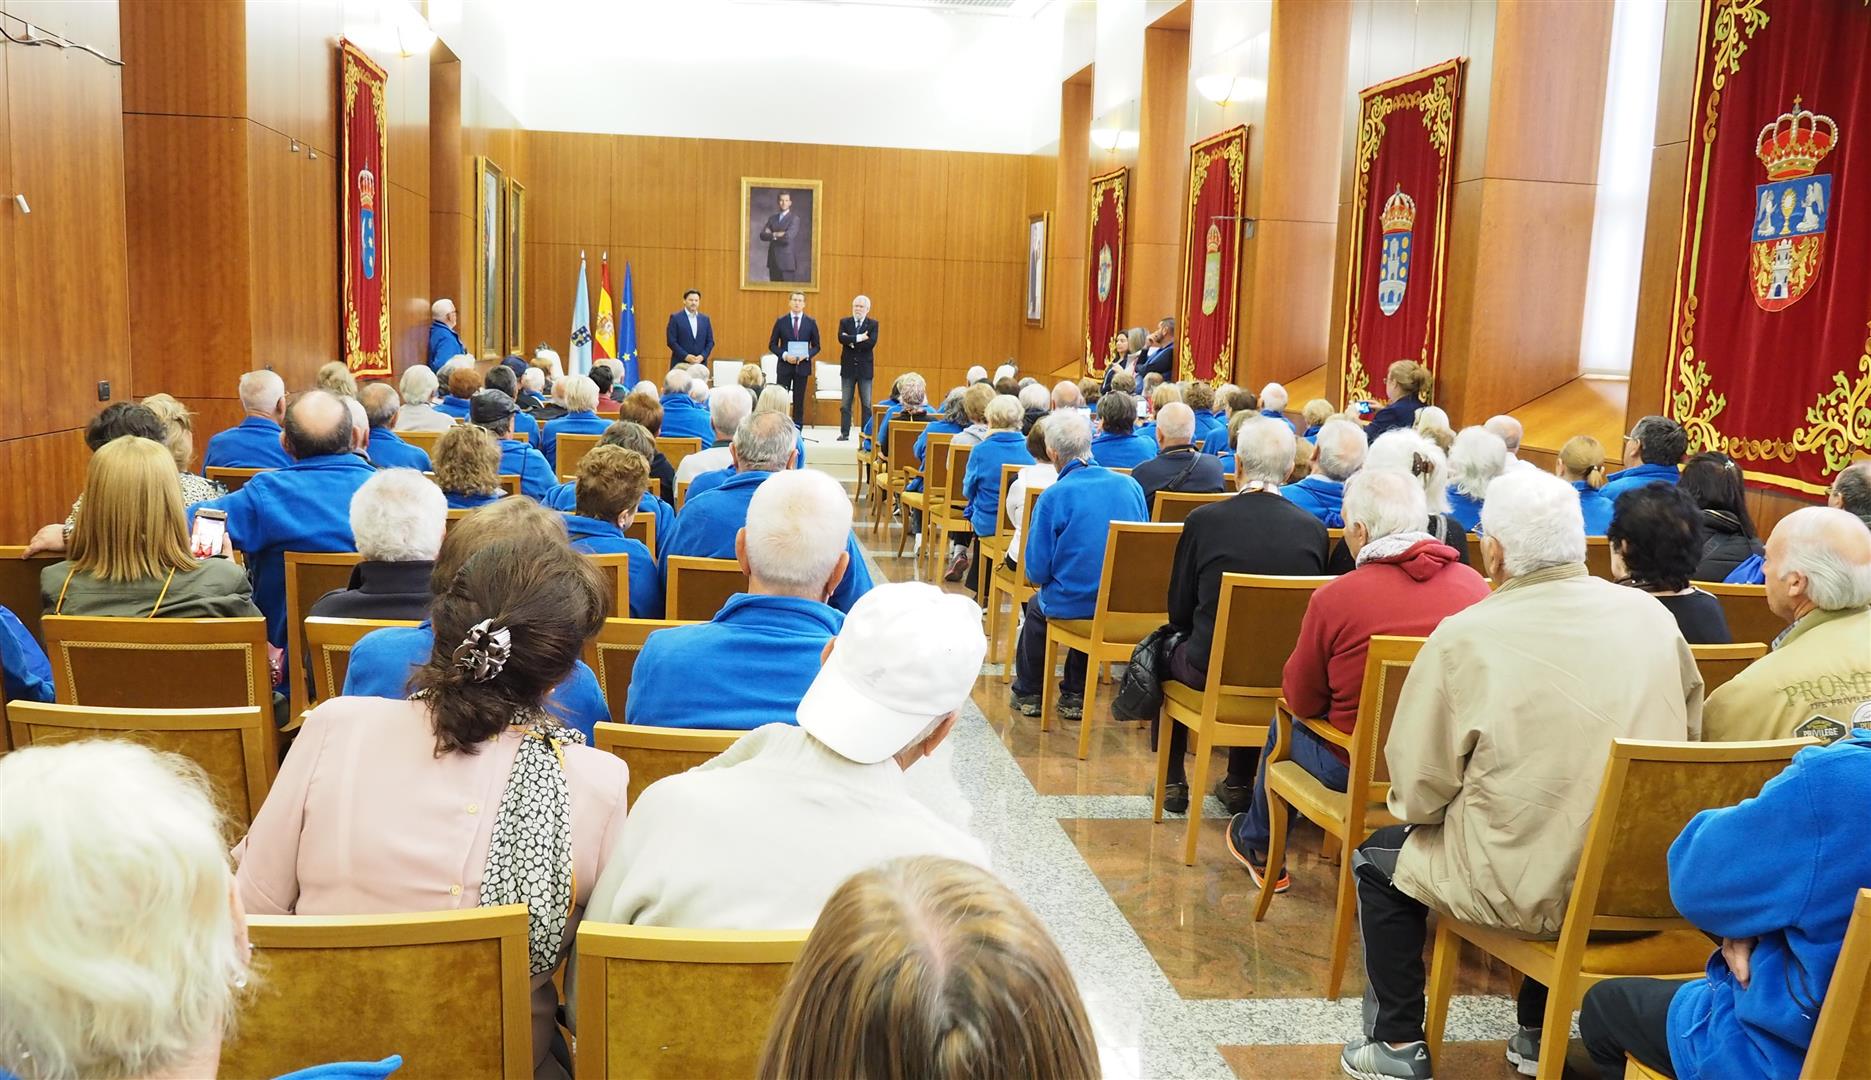 Participantes no programa “Reencontros coa terra” visitaron o Parlamento de Galicia